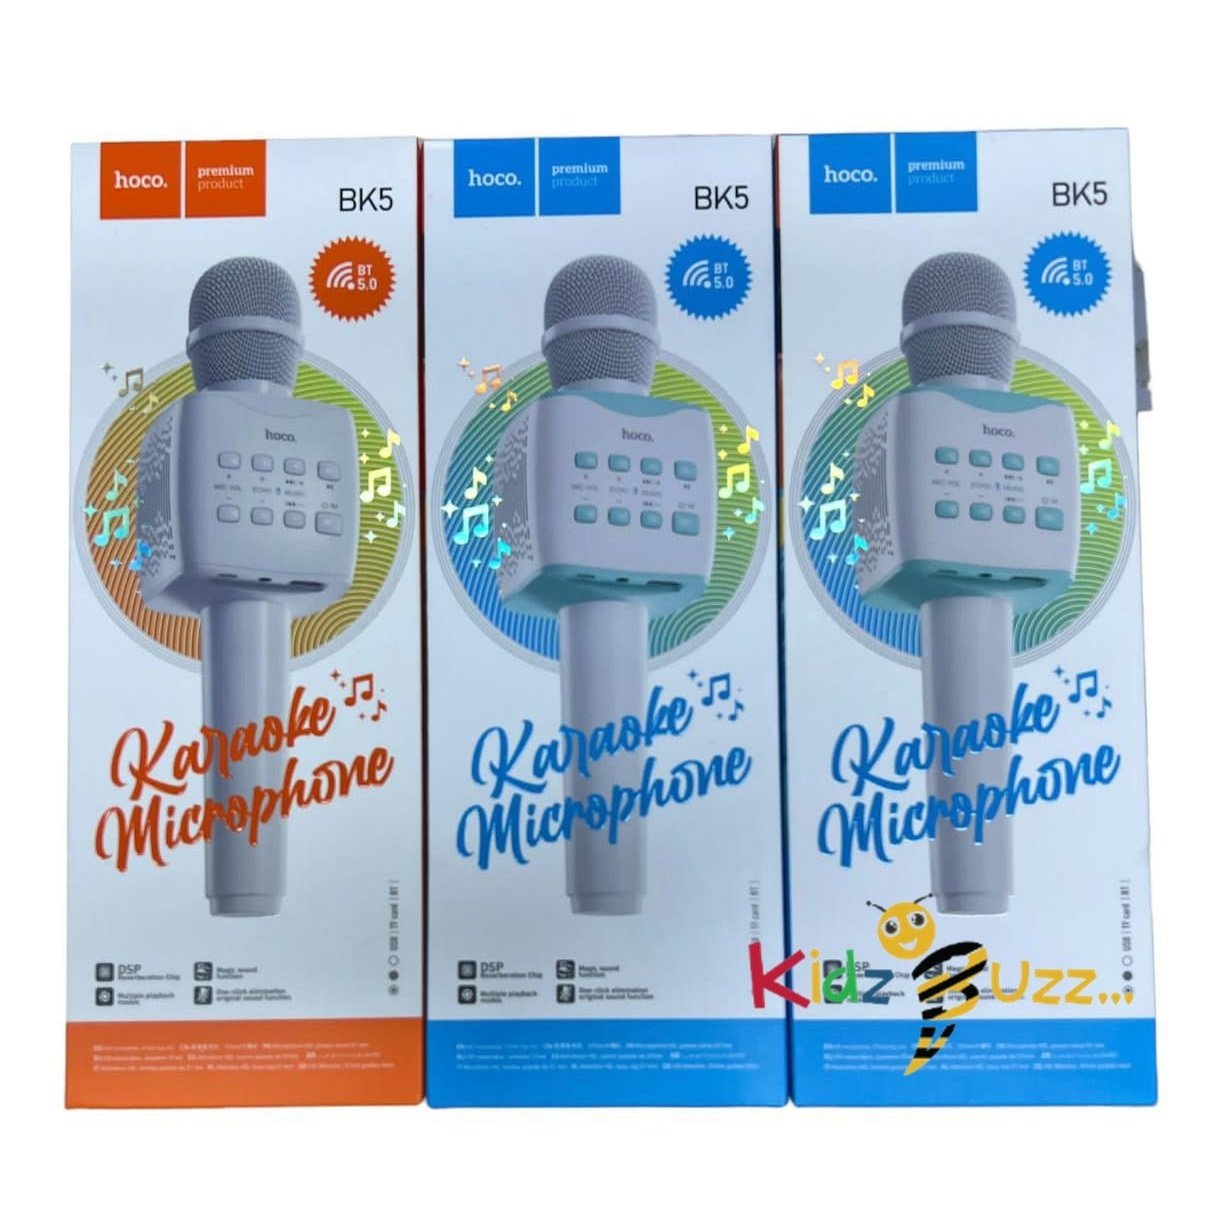 Kareoke Microphone